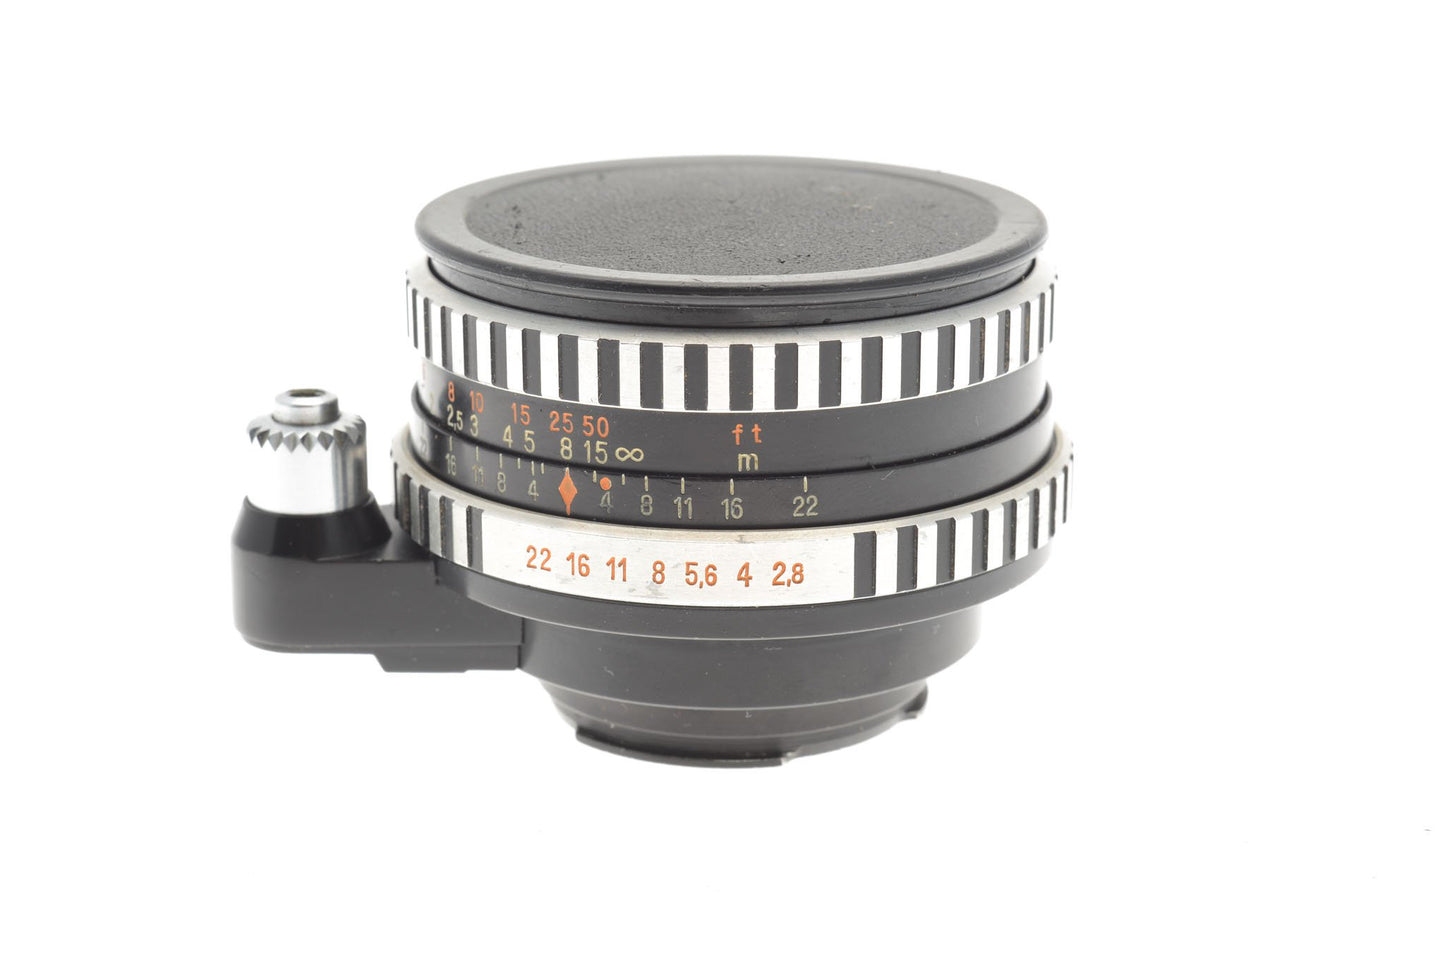 Carl Zeiss 50mm f2.8 Tessar Jena - Lens